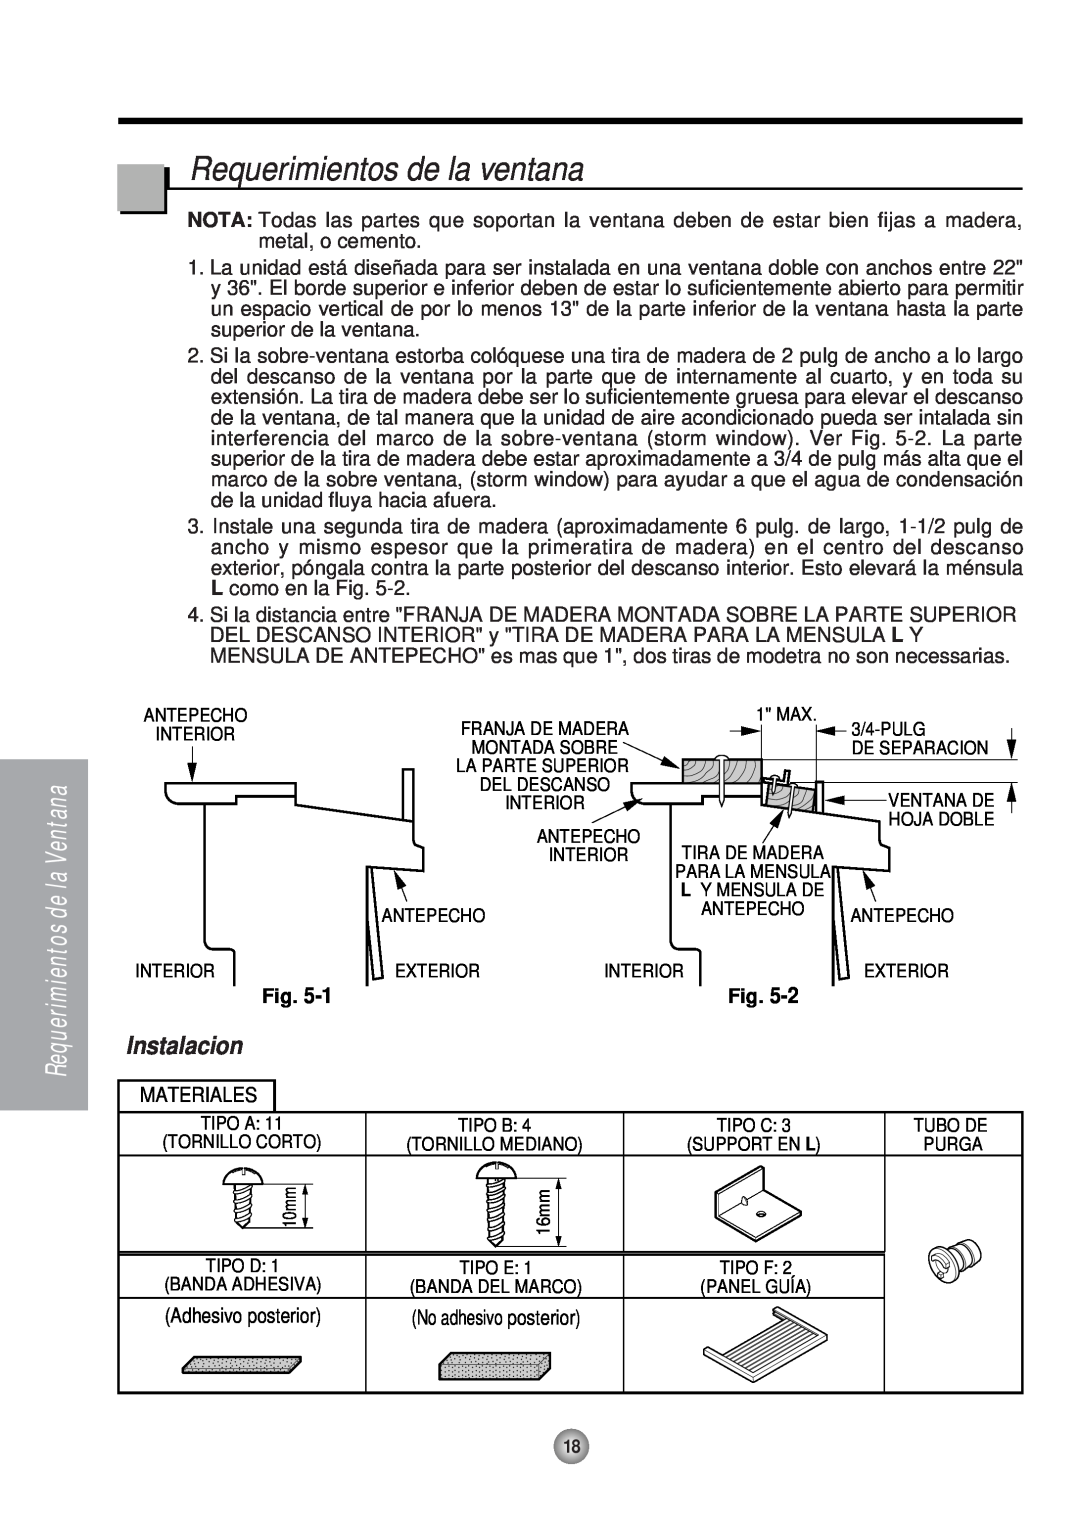 Panasonic HQ-2051RH manual Requerimientos de la ventana, Instalacion 